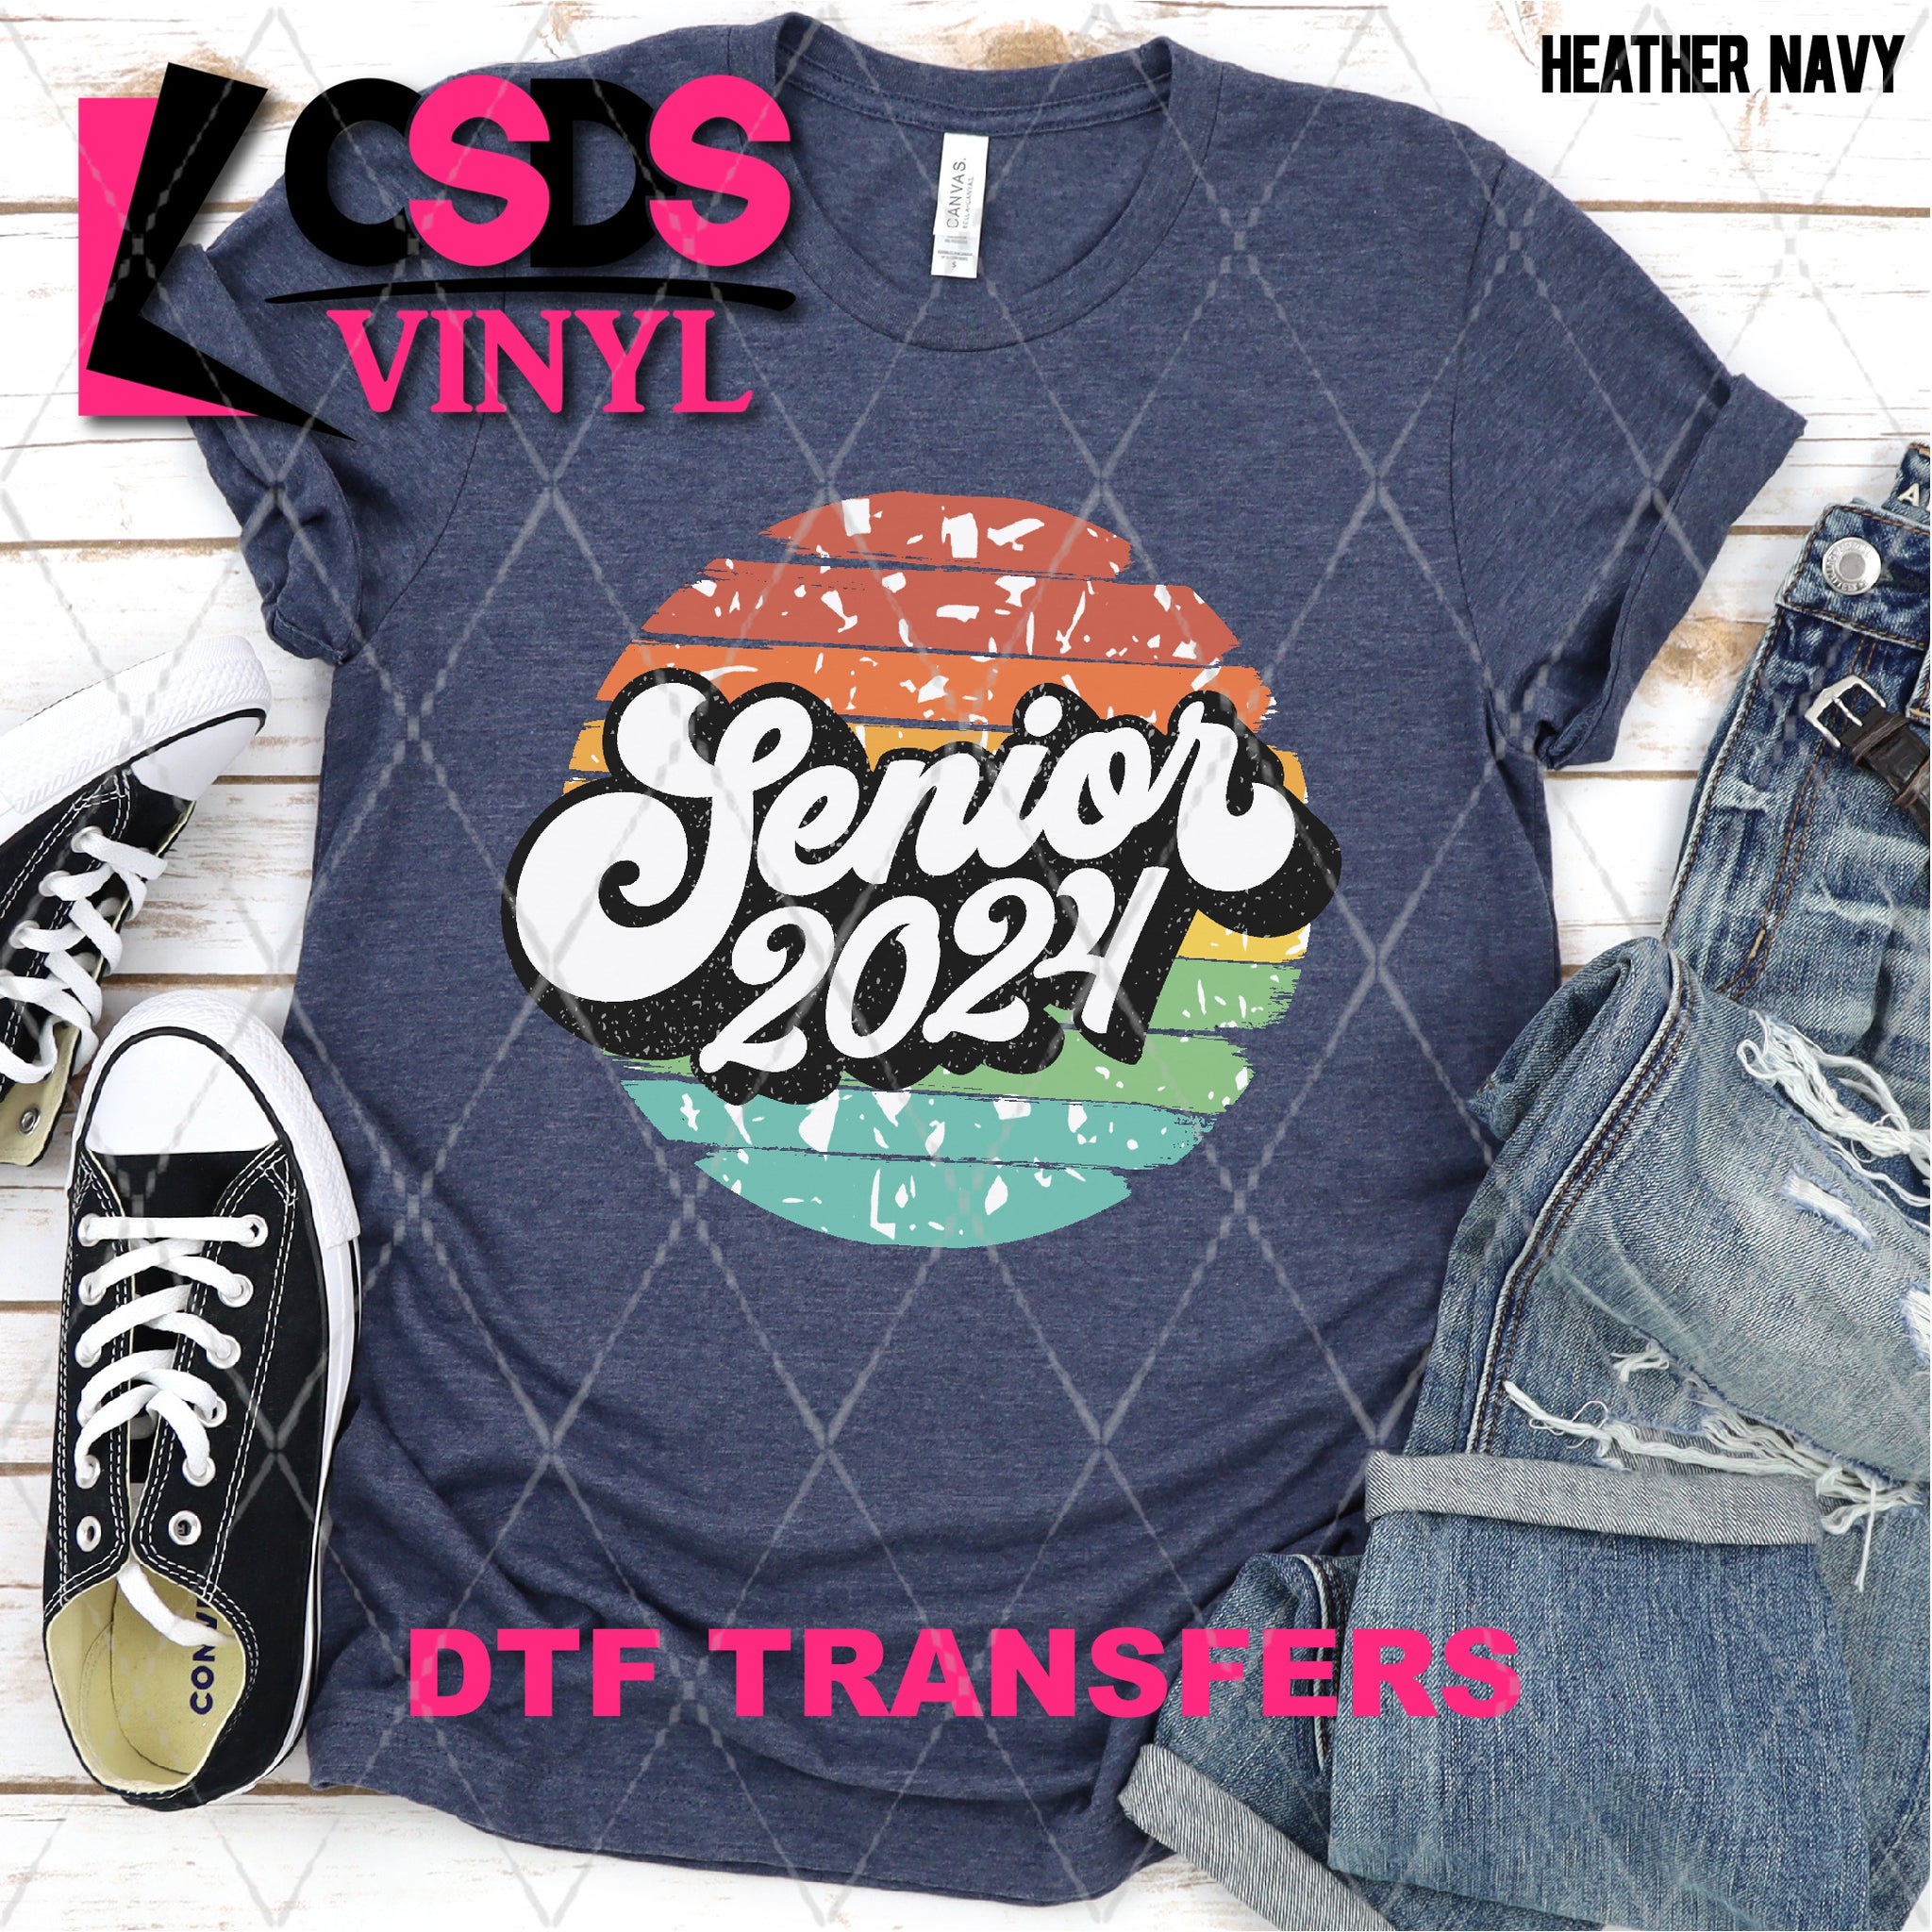 DTF Transfer DTF002746 Retro Senior 2024 CSDS Vinyl